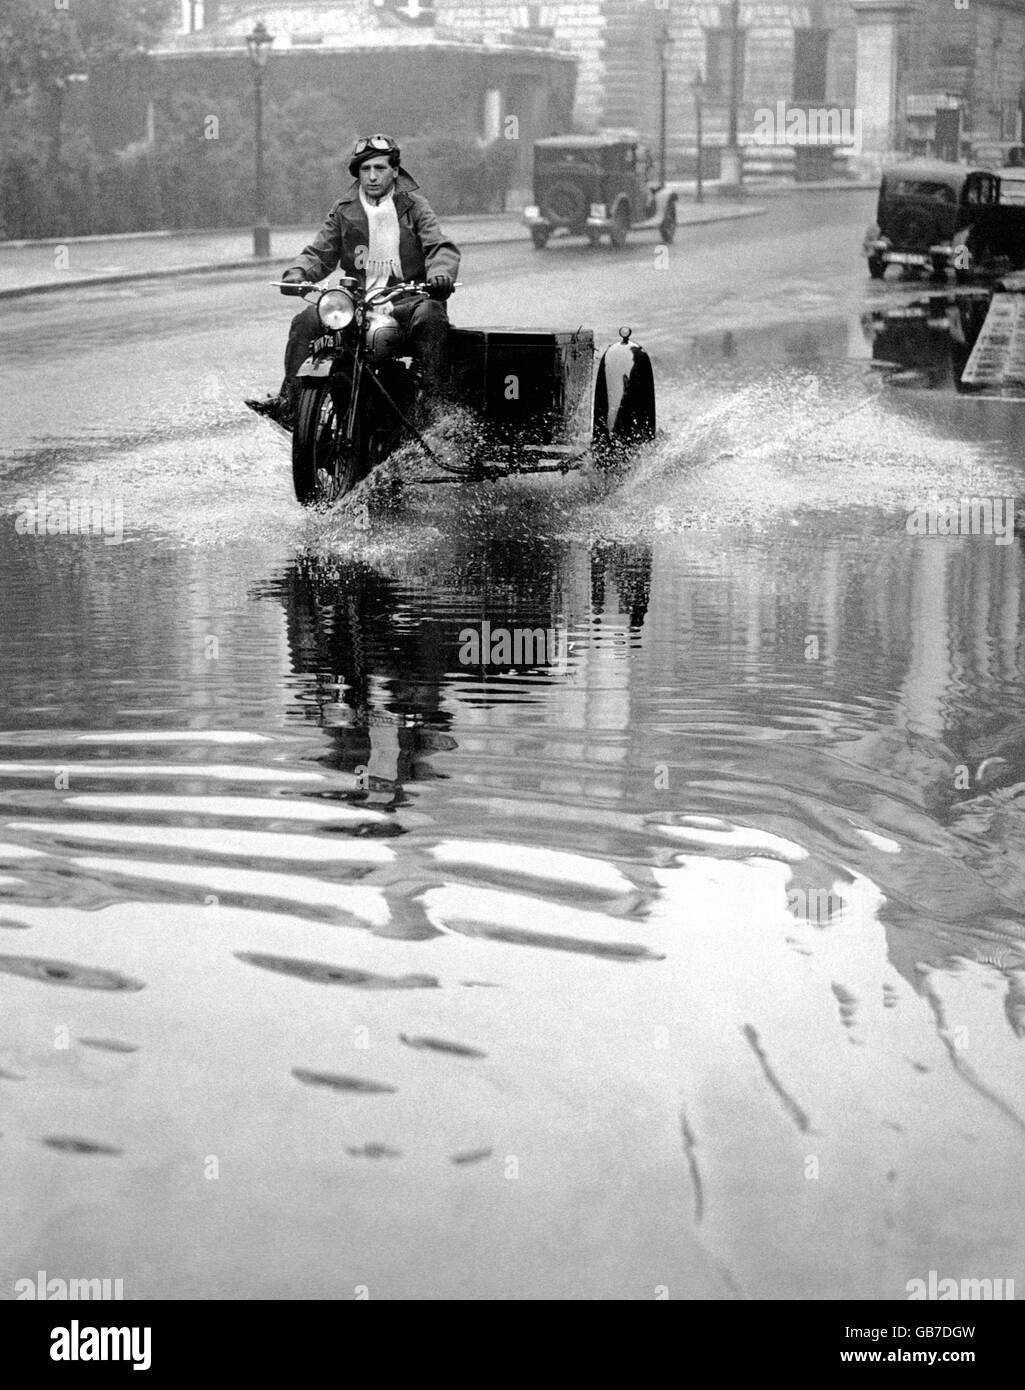 Con la sua moto e la sua side-car, un motociclista avventuroso si incammina attraverso la strada paludata sulla Birdgage Walk, Londra, dove l'enorme diluvio d'acqua ha causato l'inondazione. Foto Stock